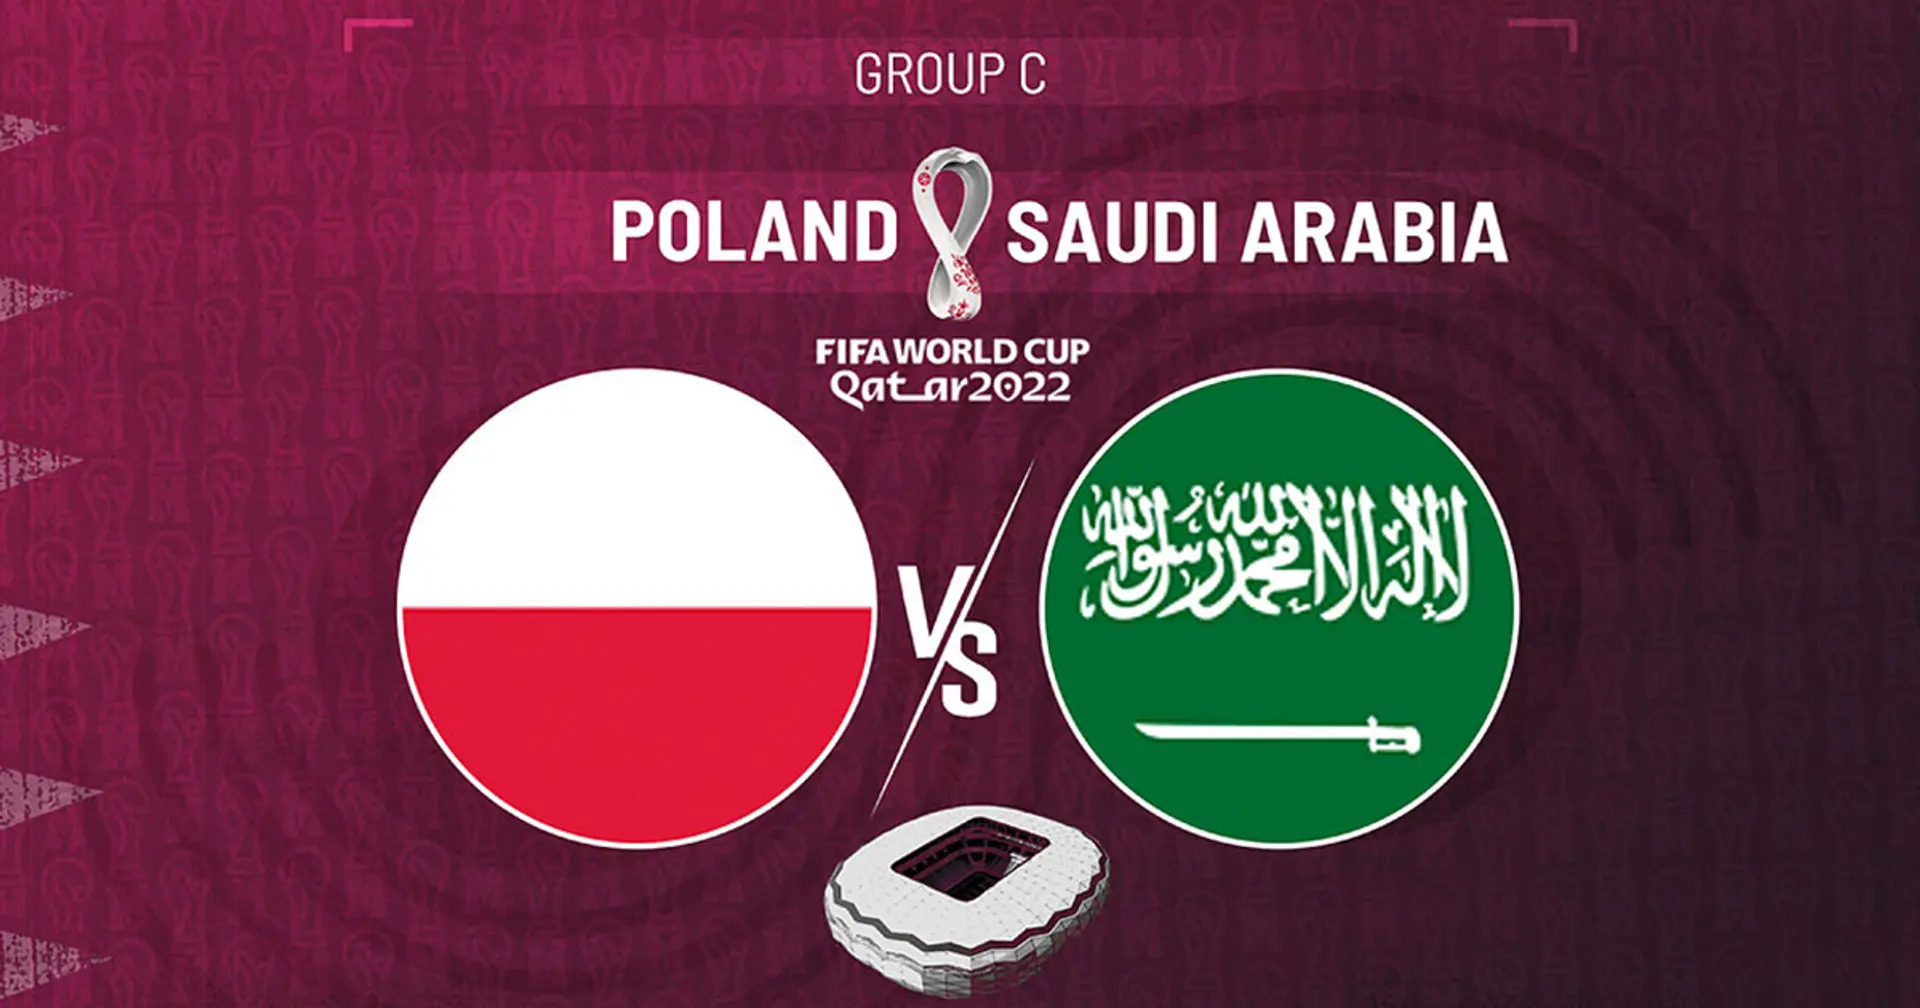 Polonia v Arabia Saudita: se revelan las alineaciones oficiales de los equipos para el choque de la Copa del Mundo